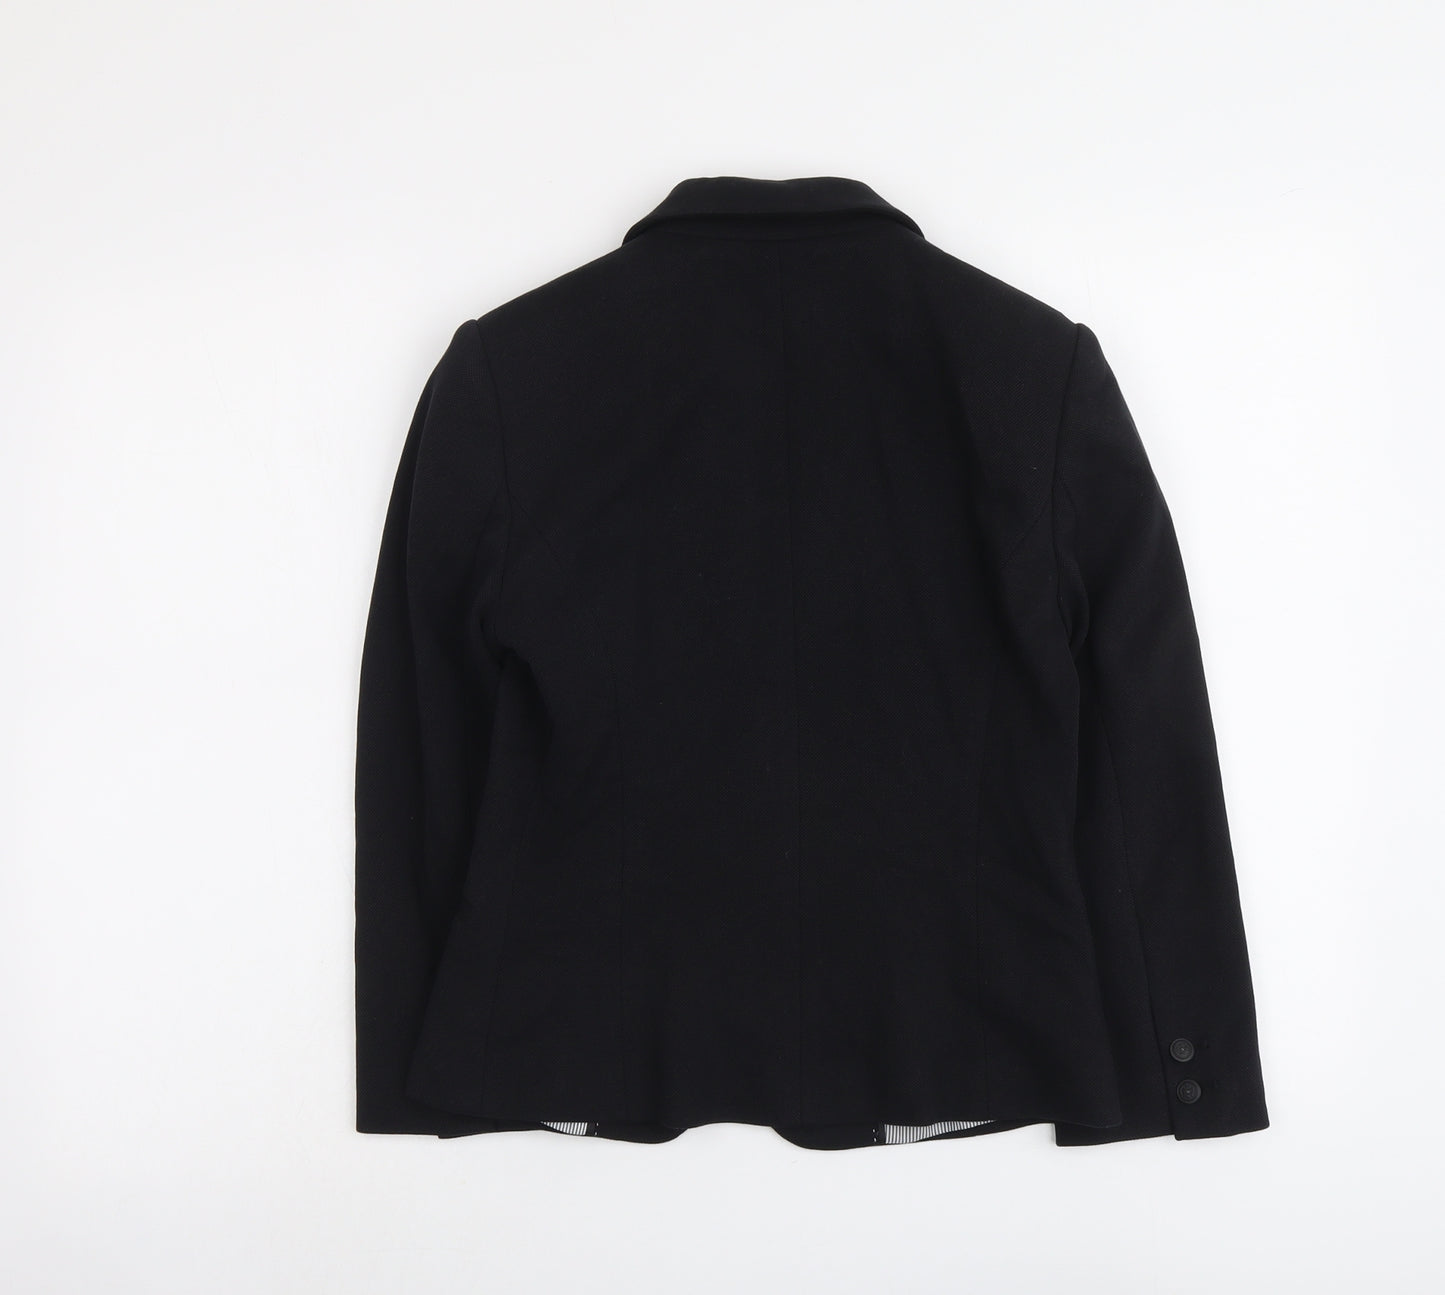 Autograph Womens Black Cotton Jacket Blazer Size 8